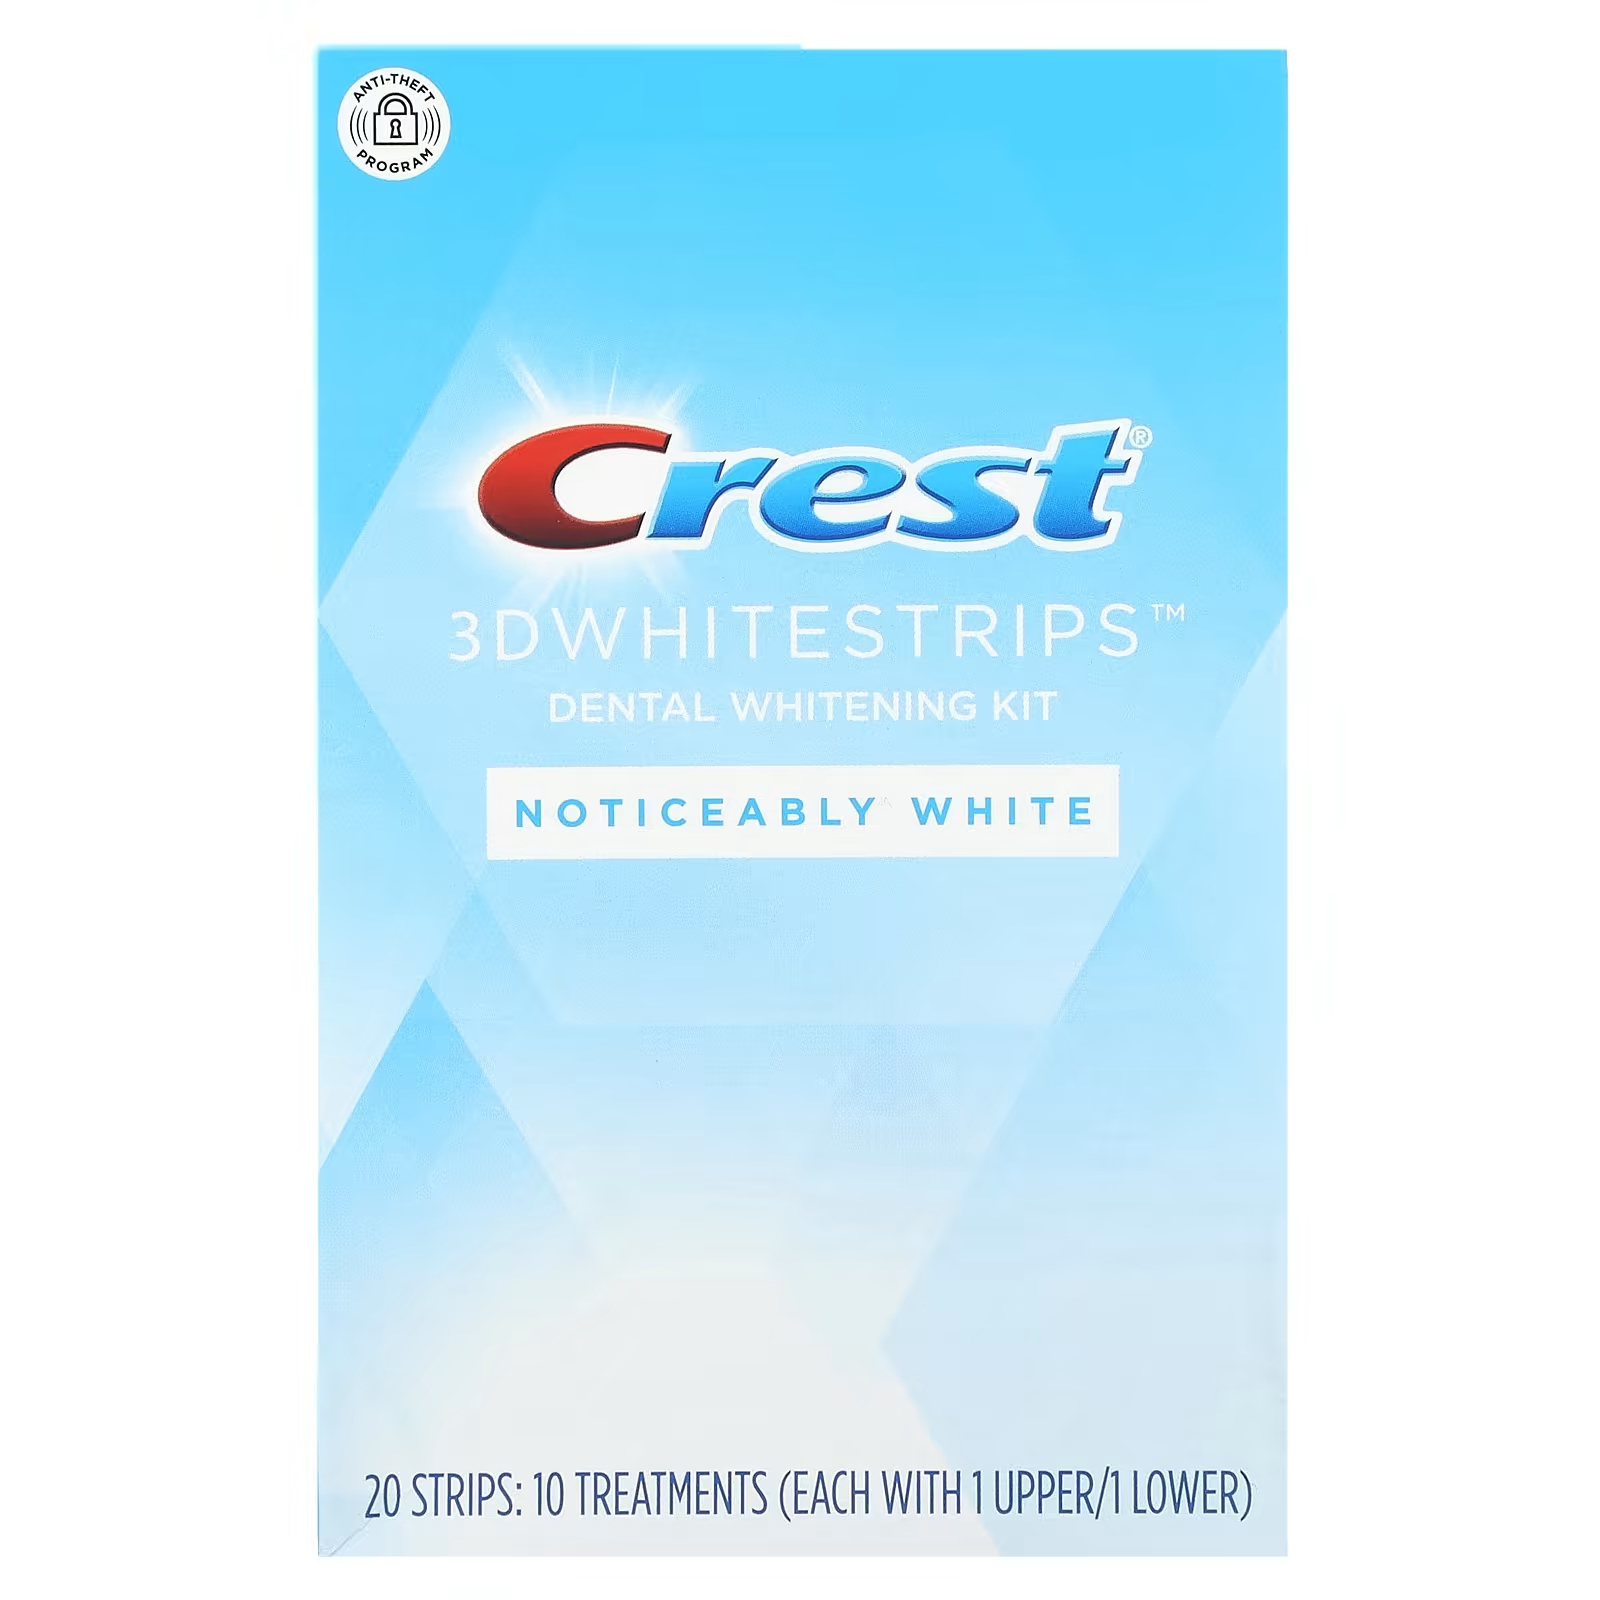 Набор для отбеливания зубов Crest 3D Whitestrips заметный белый цвет, 20 шт. crest 3d whitestrips набор для отбеливания зубов 1 час экспресс 20 полосок